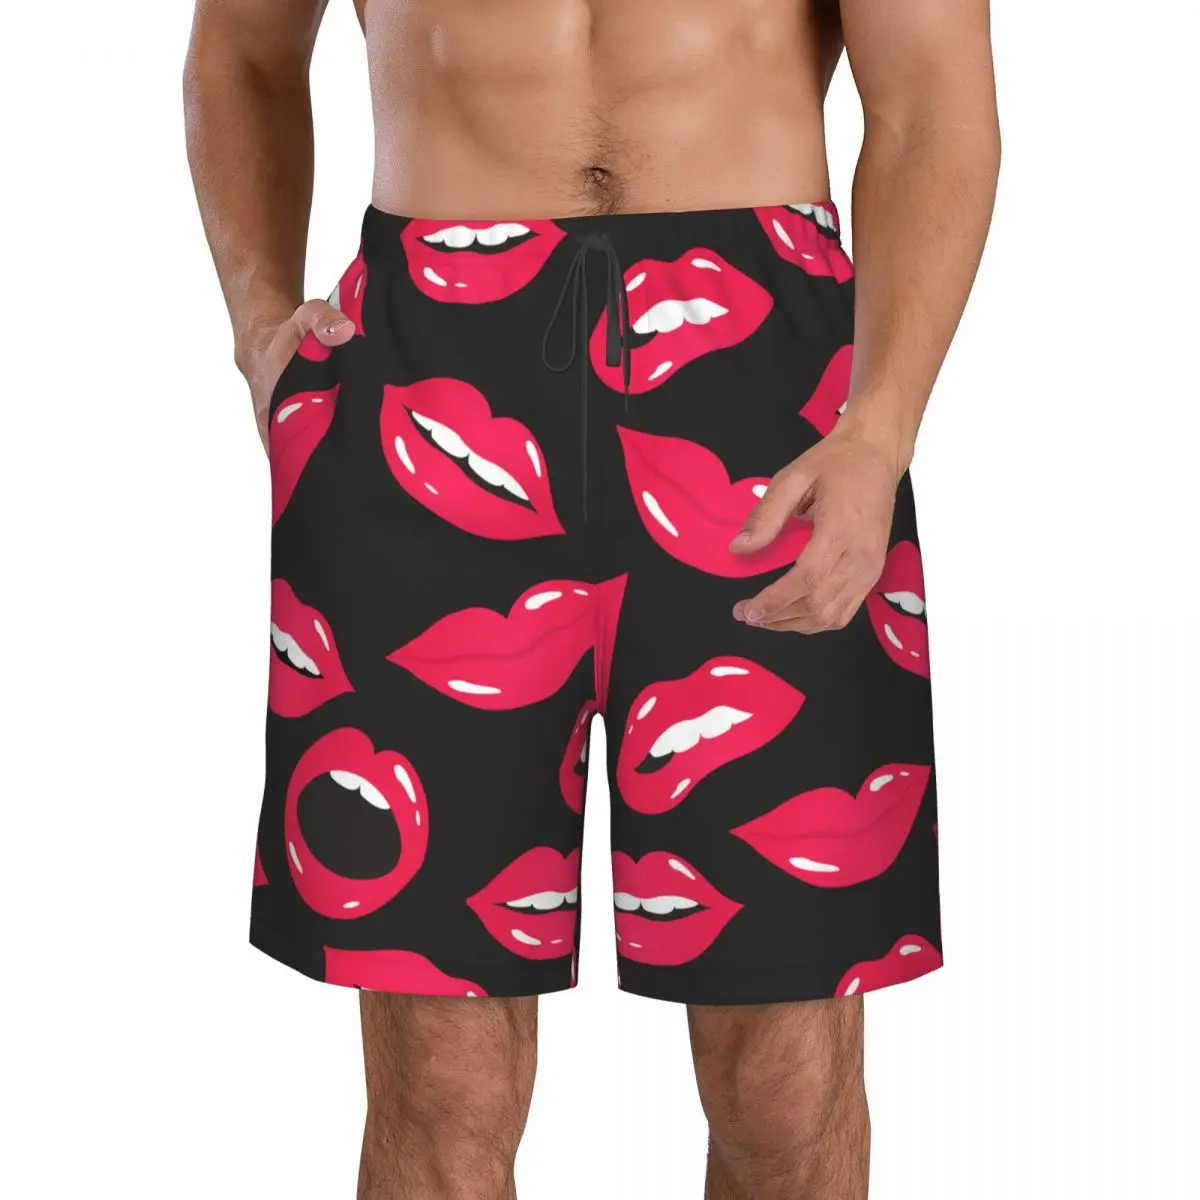 

Быстросохнущие шорты для плавания для мужчин, одежда для плавания, Мужской купальный костюм, плавки, летняя пляжная одежда для купания, красные губы и рот